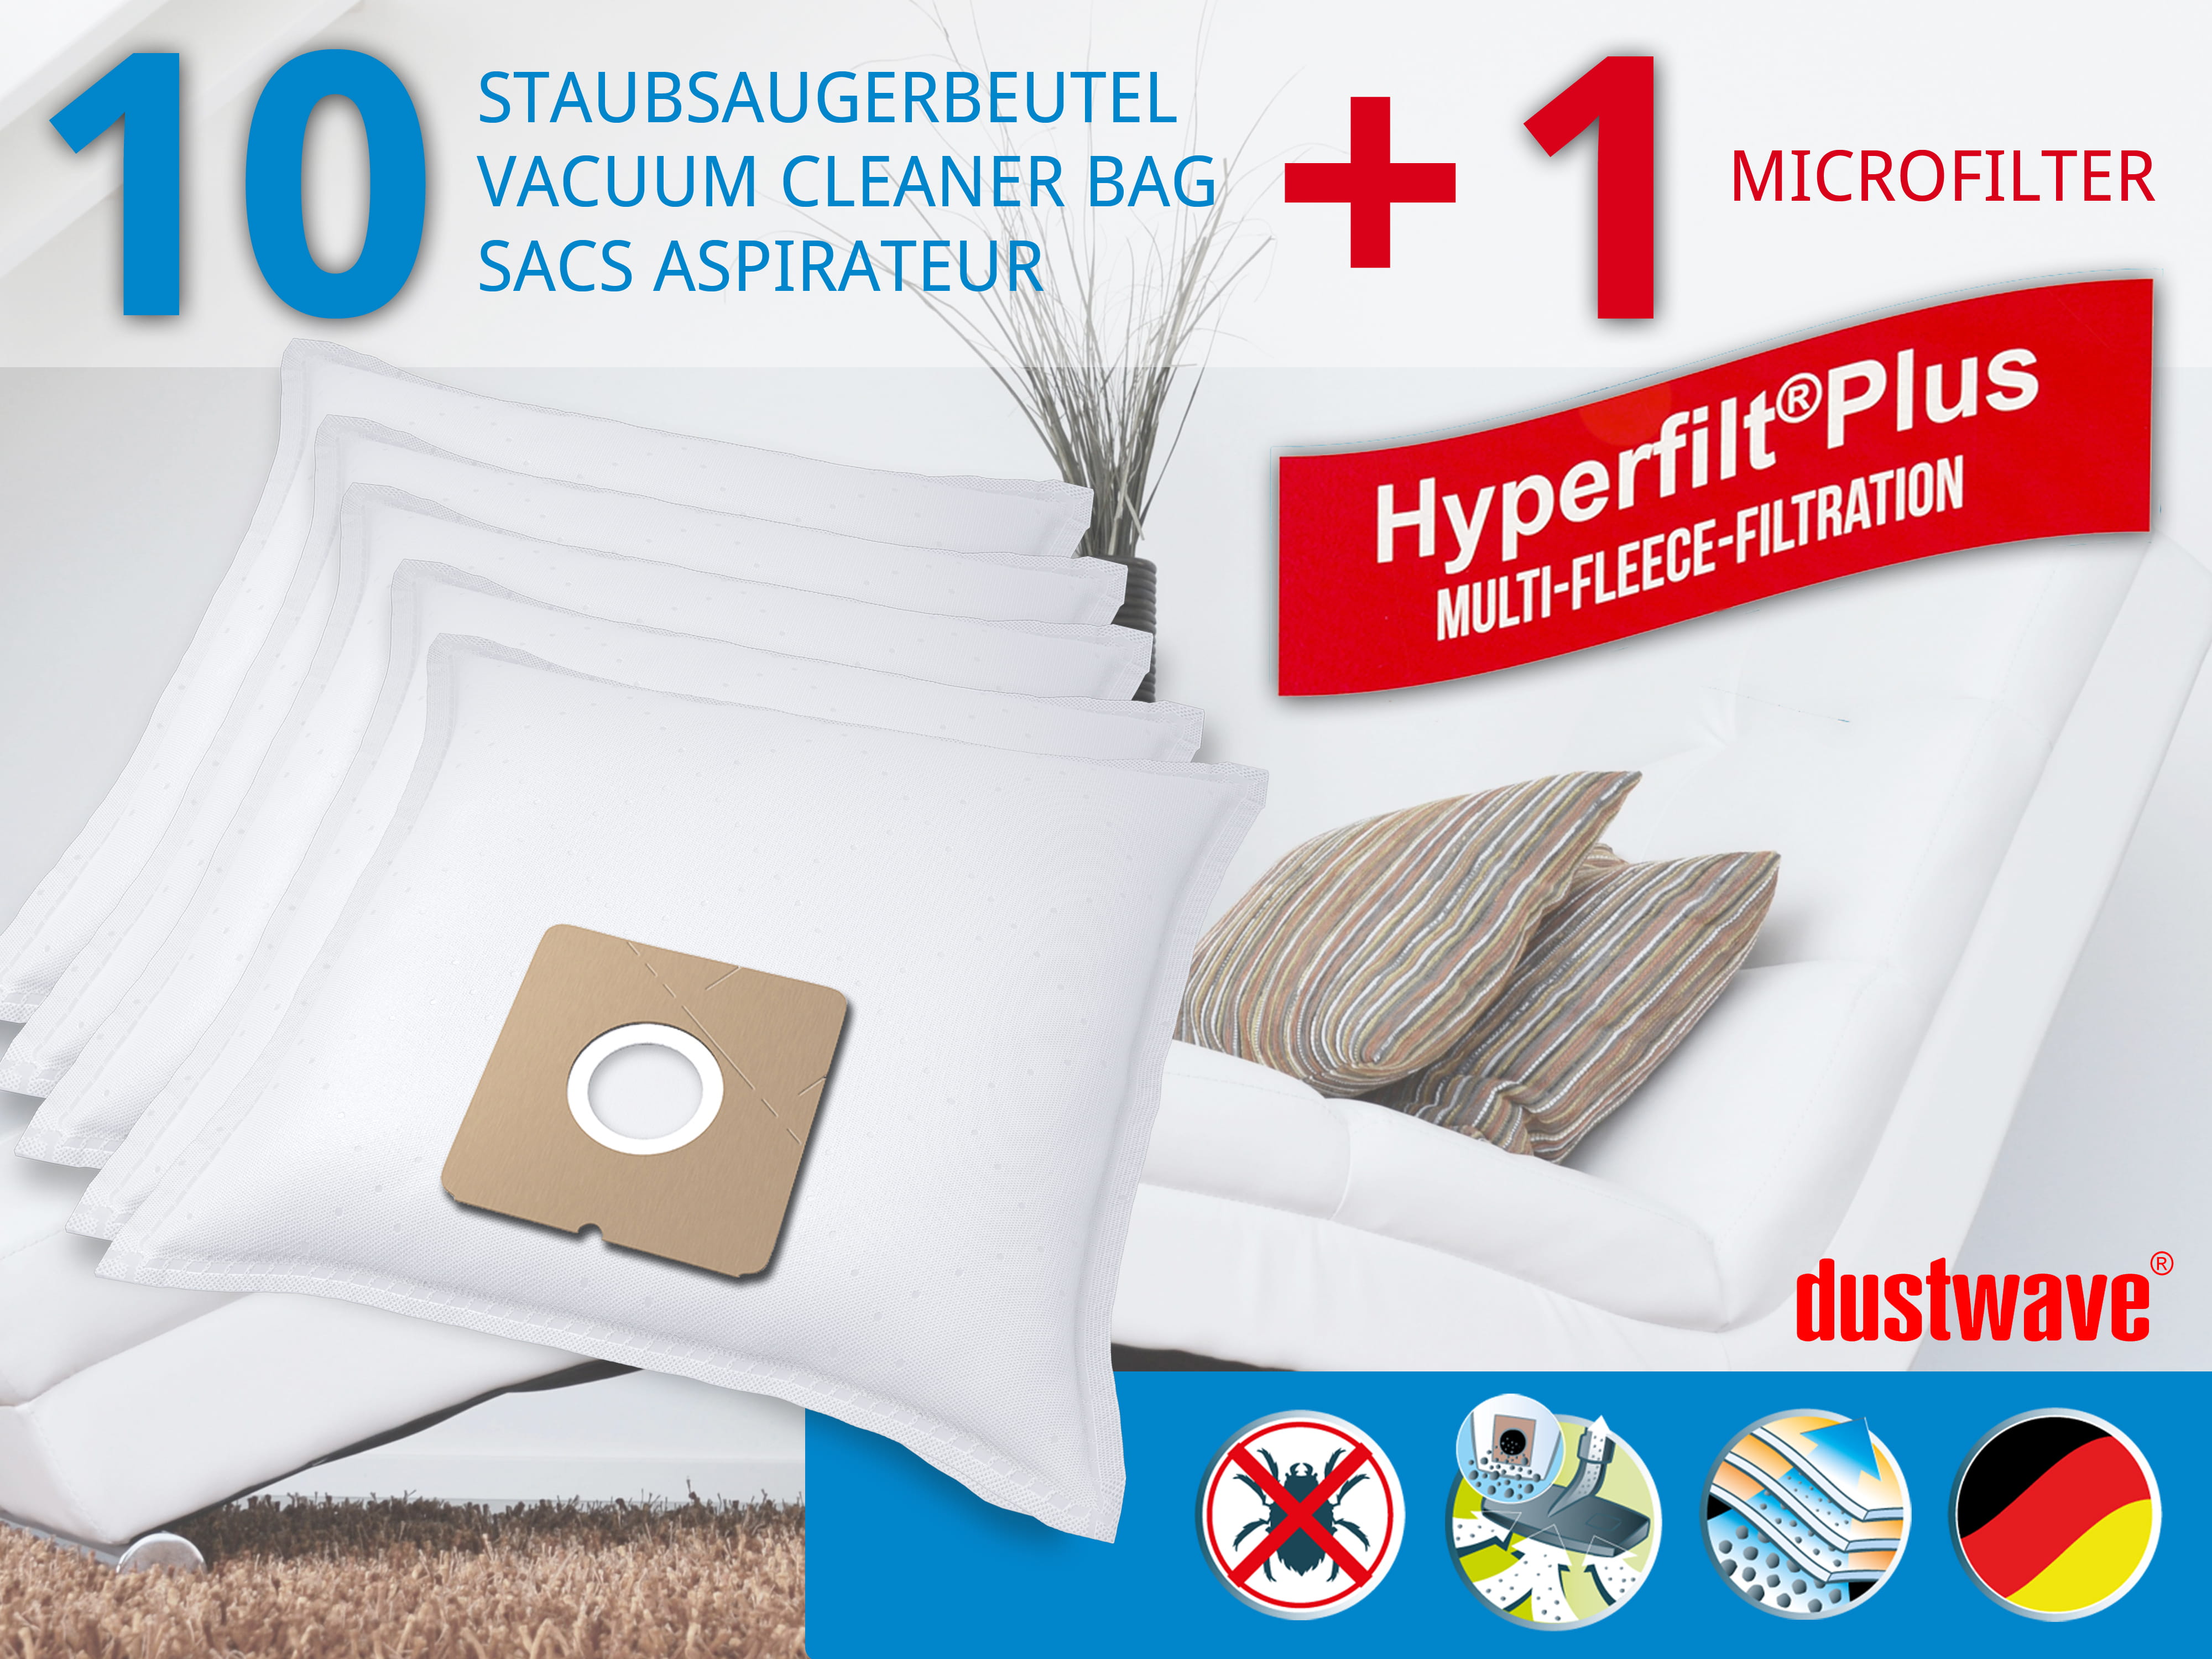 Dustwave® 10 Staubsaugerbeutel für Elekta EVC 2450 W - hocheffizient, mehrlagiges Mikrovlies mit Hygieneverschluss - Made in Germany